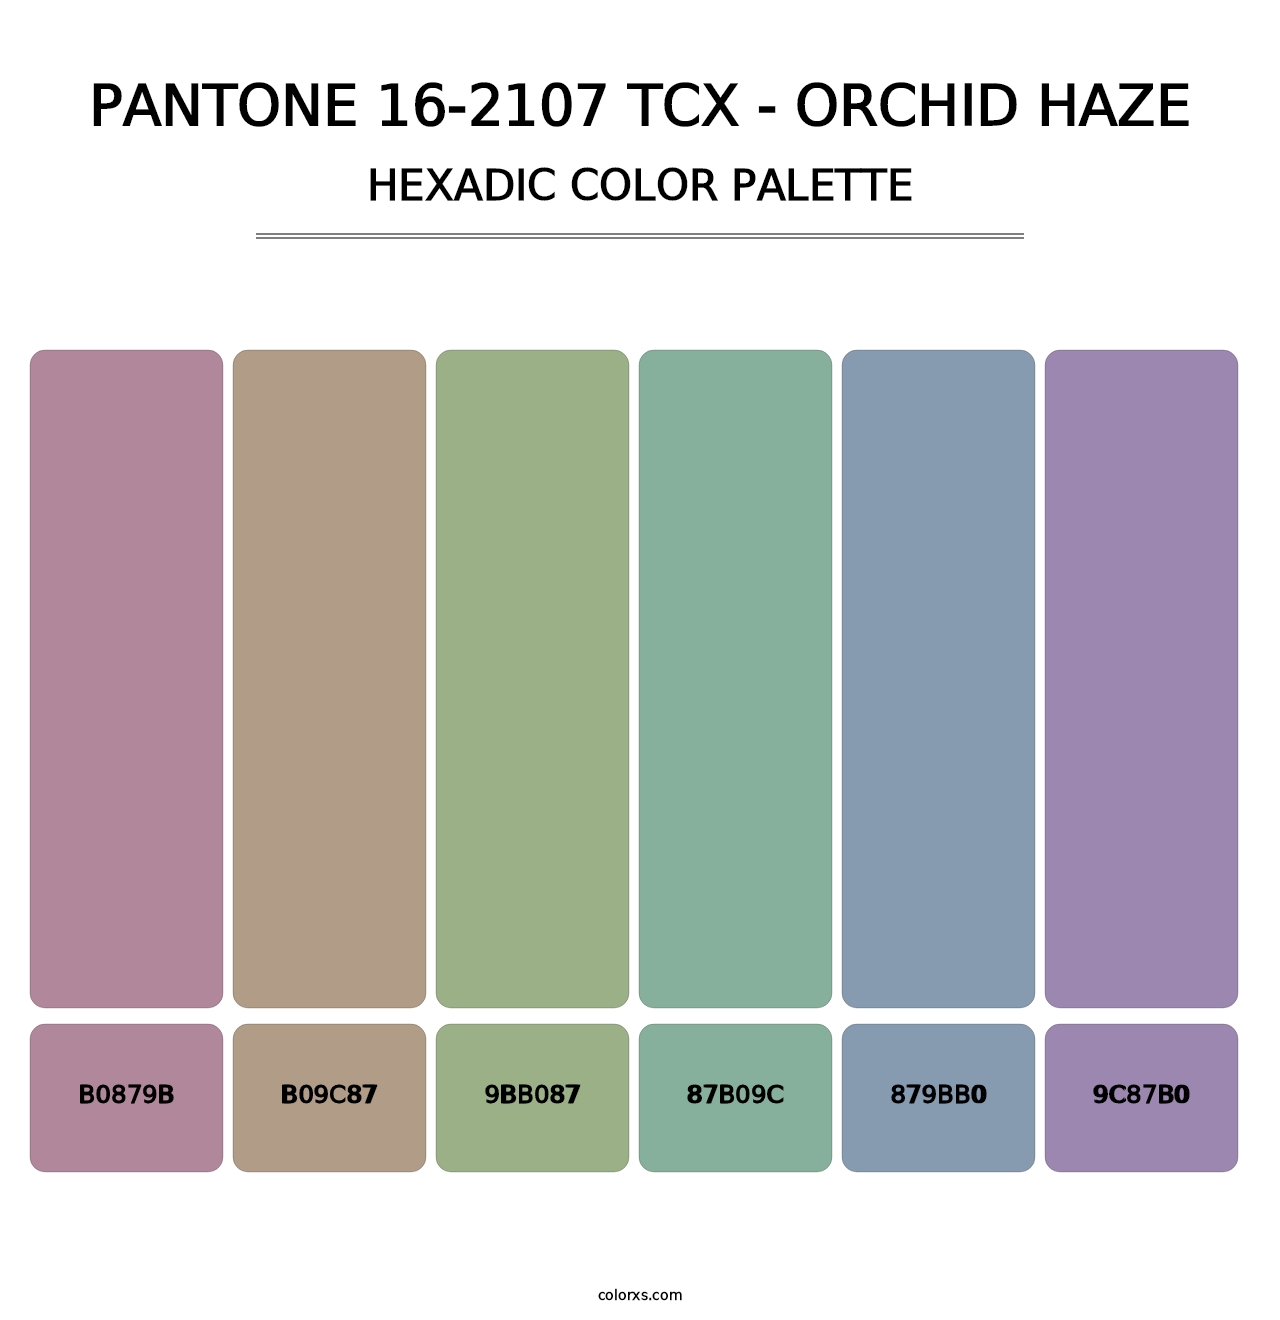 PANTONE 16-2107 TCX - Orchid Haze - Hexadic Color Palette